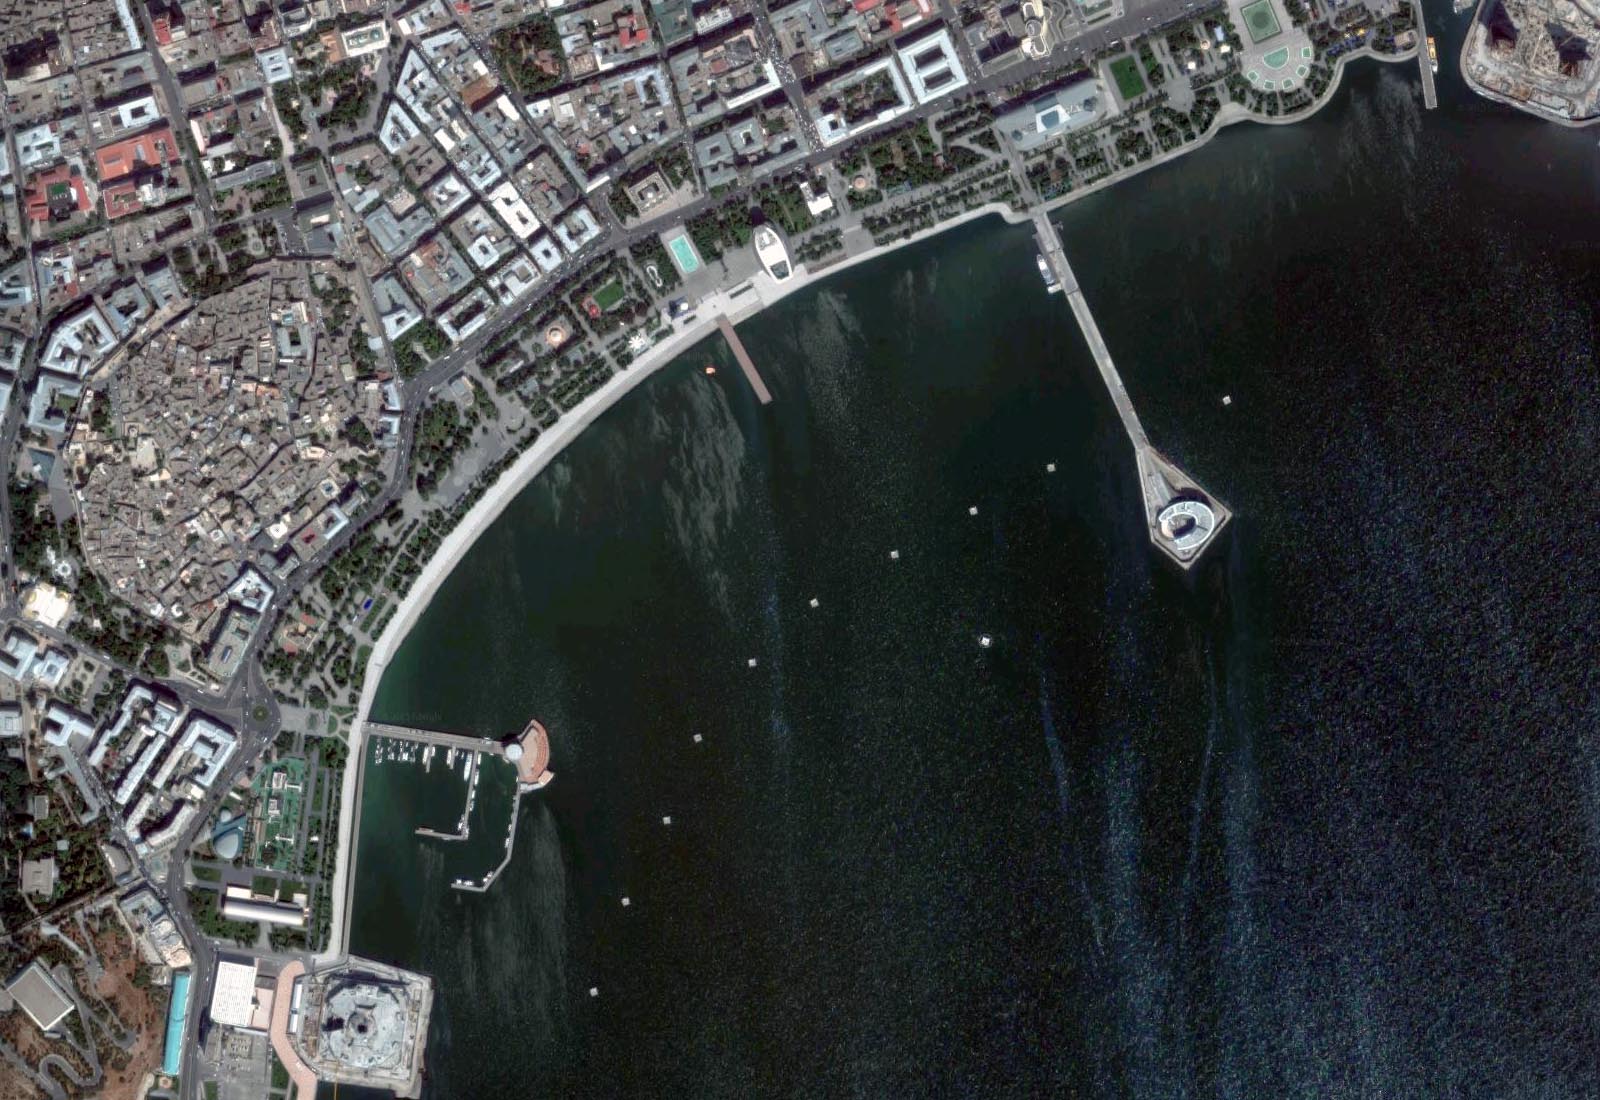 Sadko Baku - Zenithal aerial view